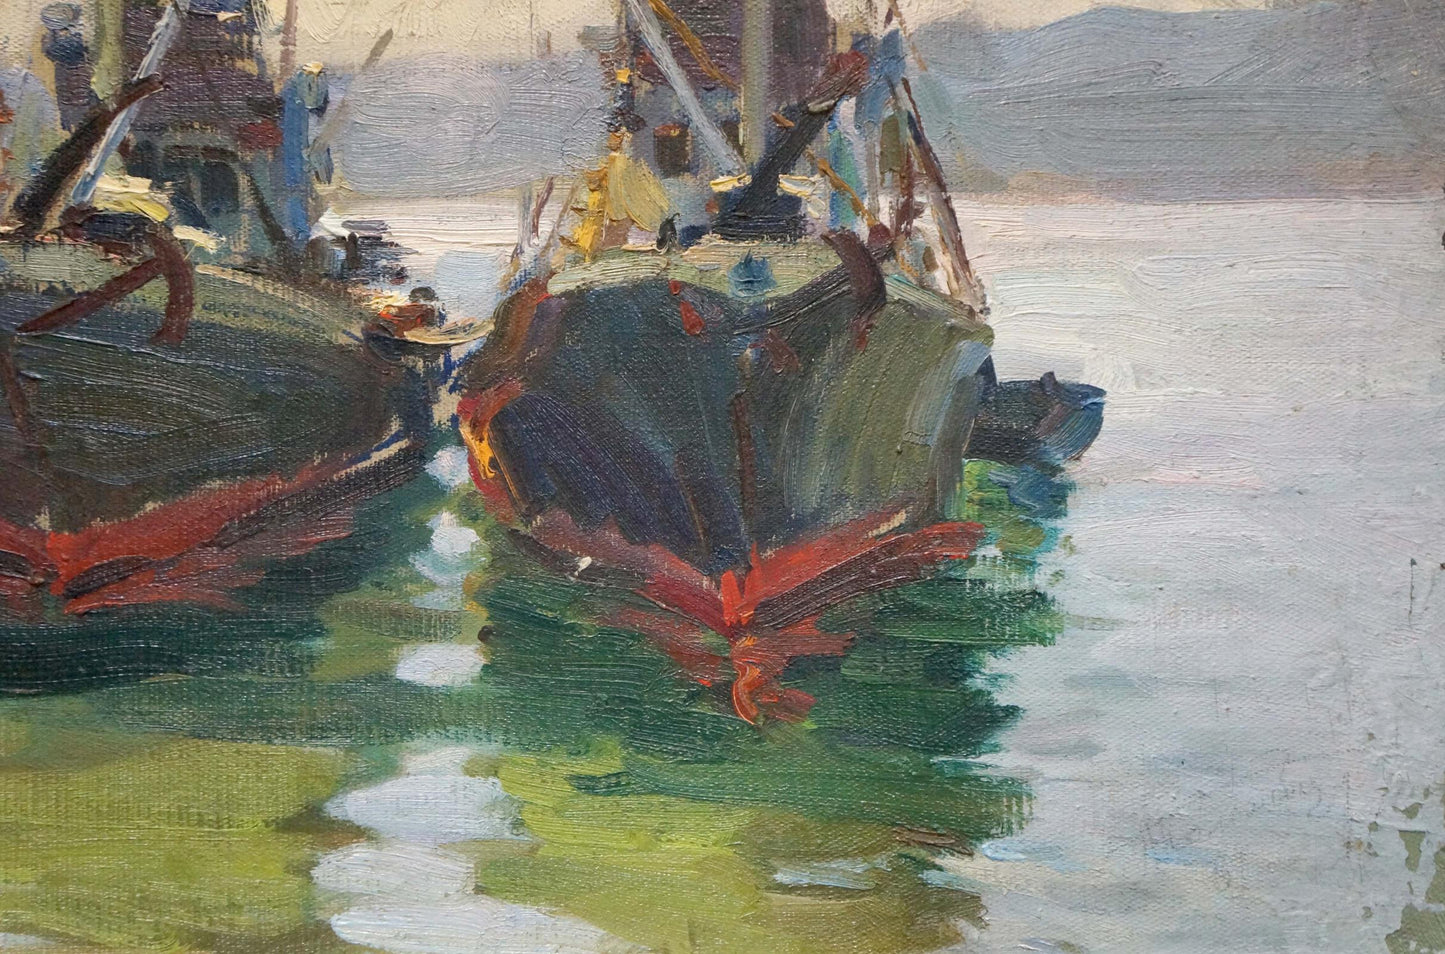 Oil painting Ships in port Kolomoitsev Petr Mikhailovich